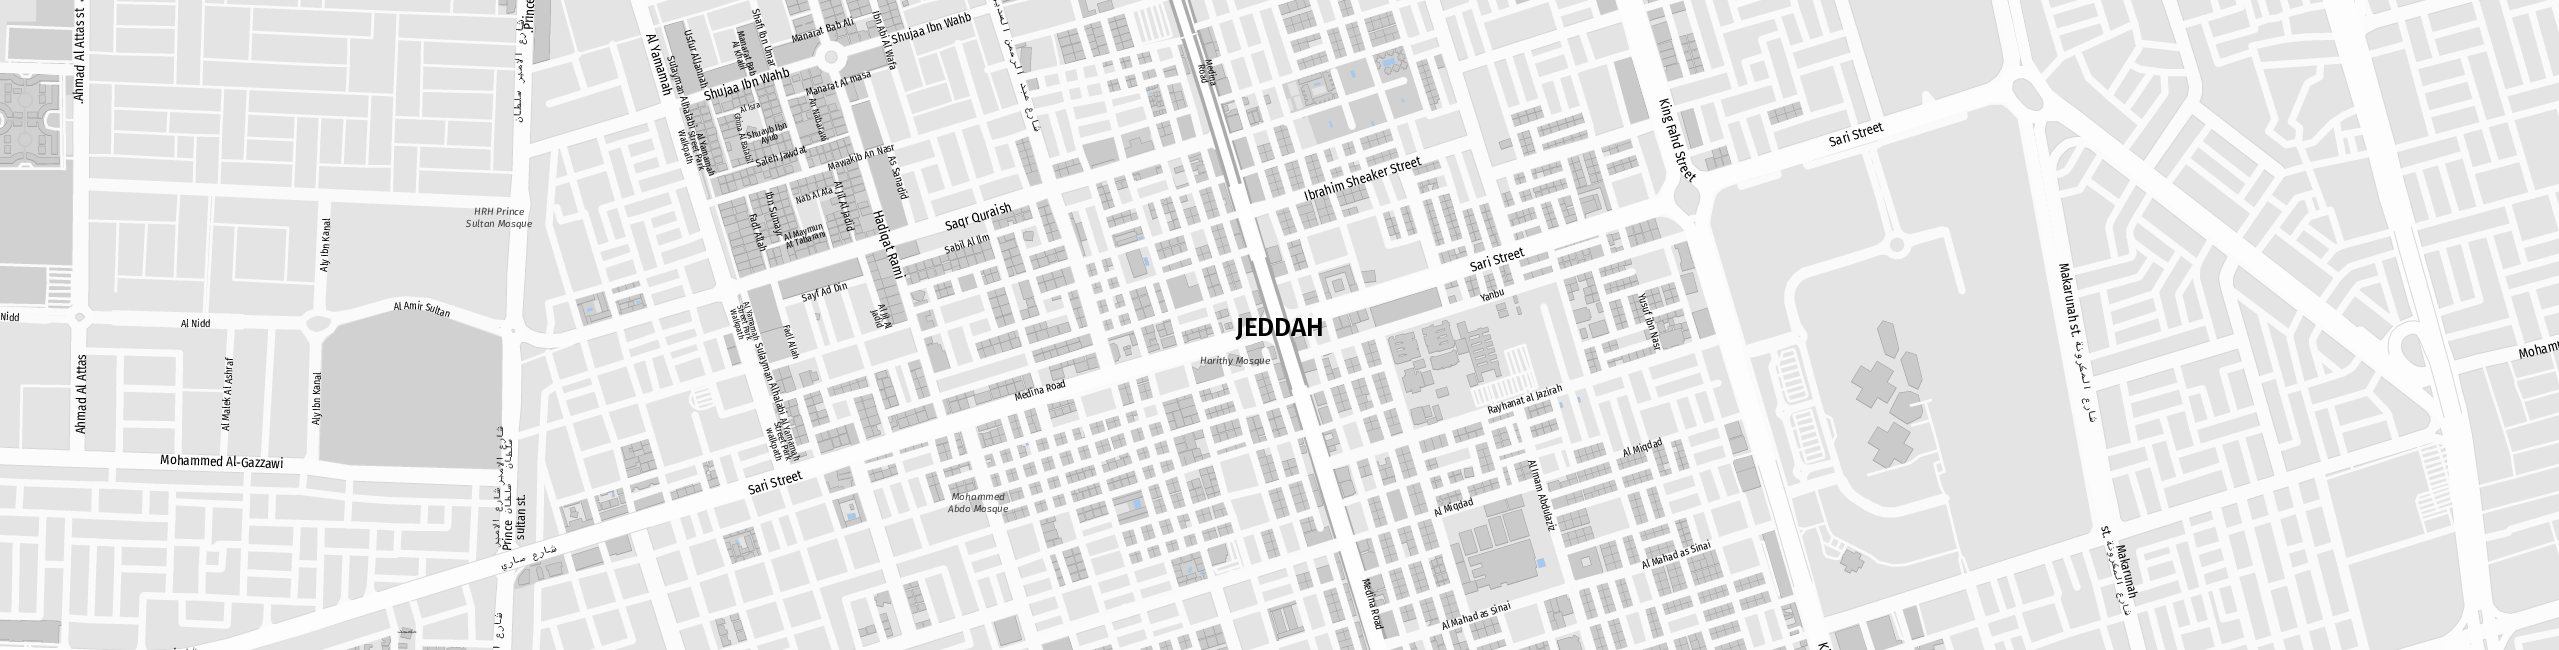 Stadtplan Jeddah zum Downloaden.